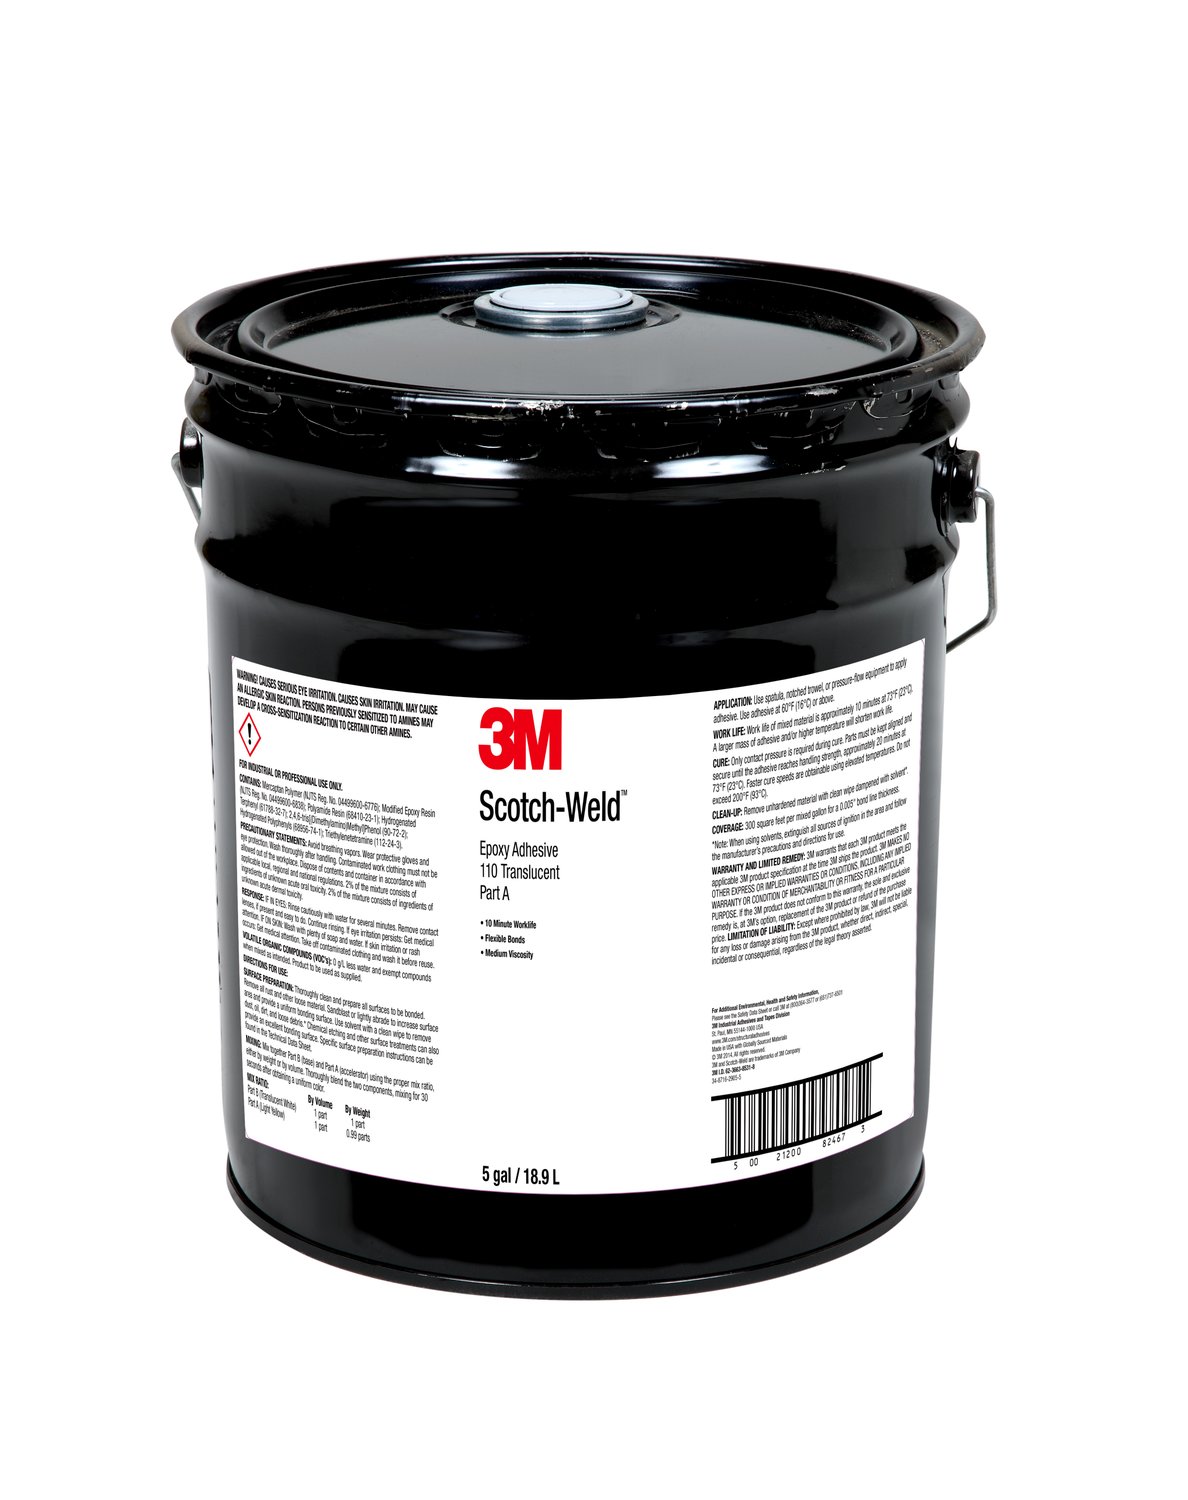 7010366163 - 3M Scotch-Weld Epoxy Adhesive 110, Translucent, Part A, 5 Gallon
(Pail), Drum